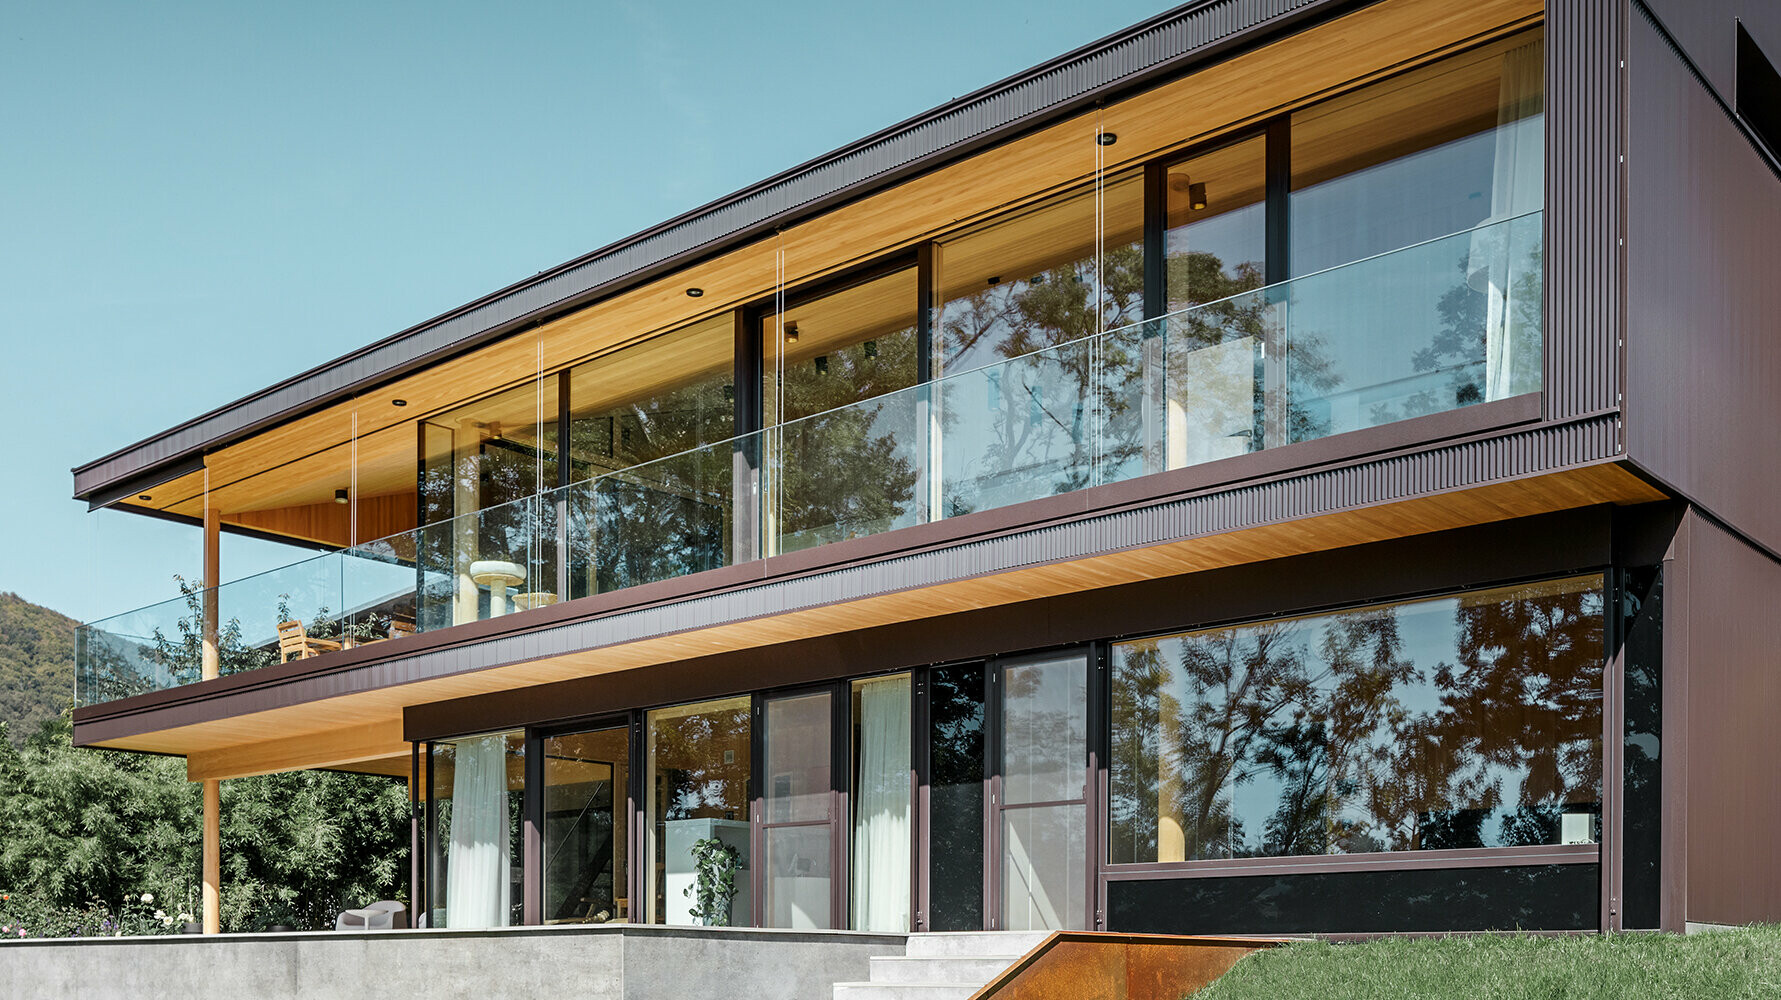 Neues Einfamilienhaus mit großen Glasflächen und brauner Aluminium Fassade